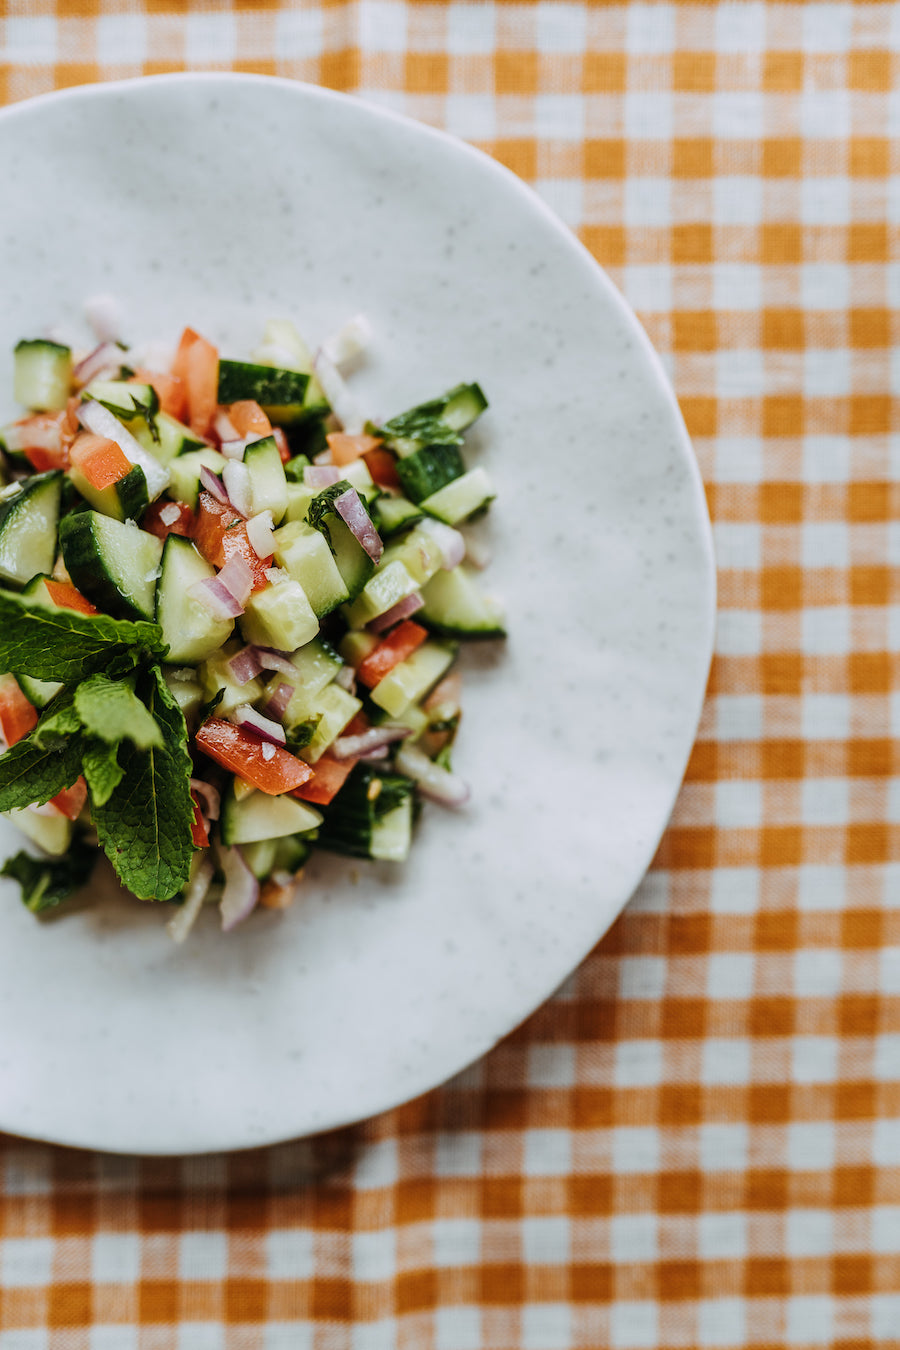 Recipe: A simple Shirazi salad